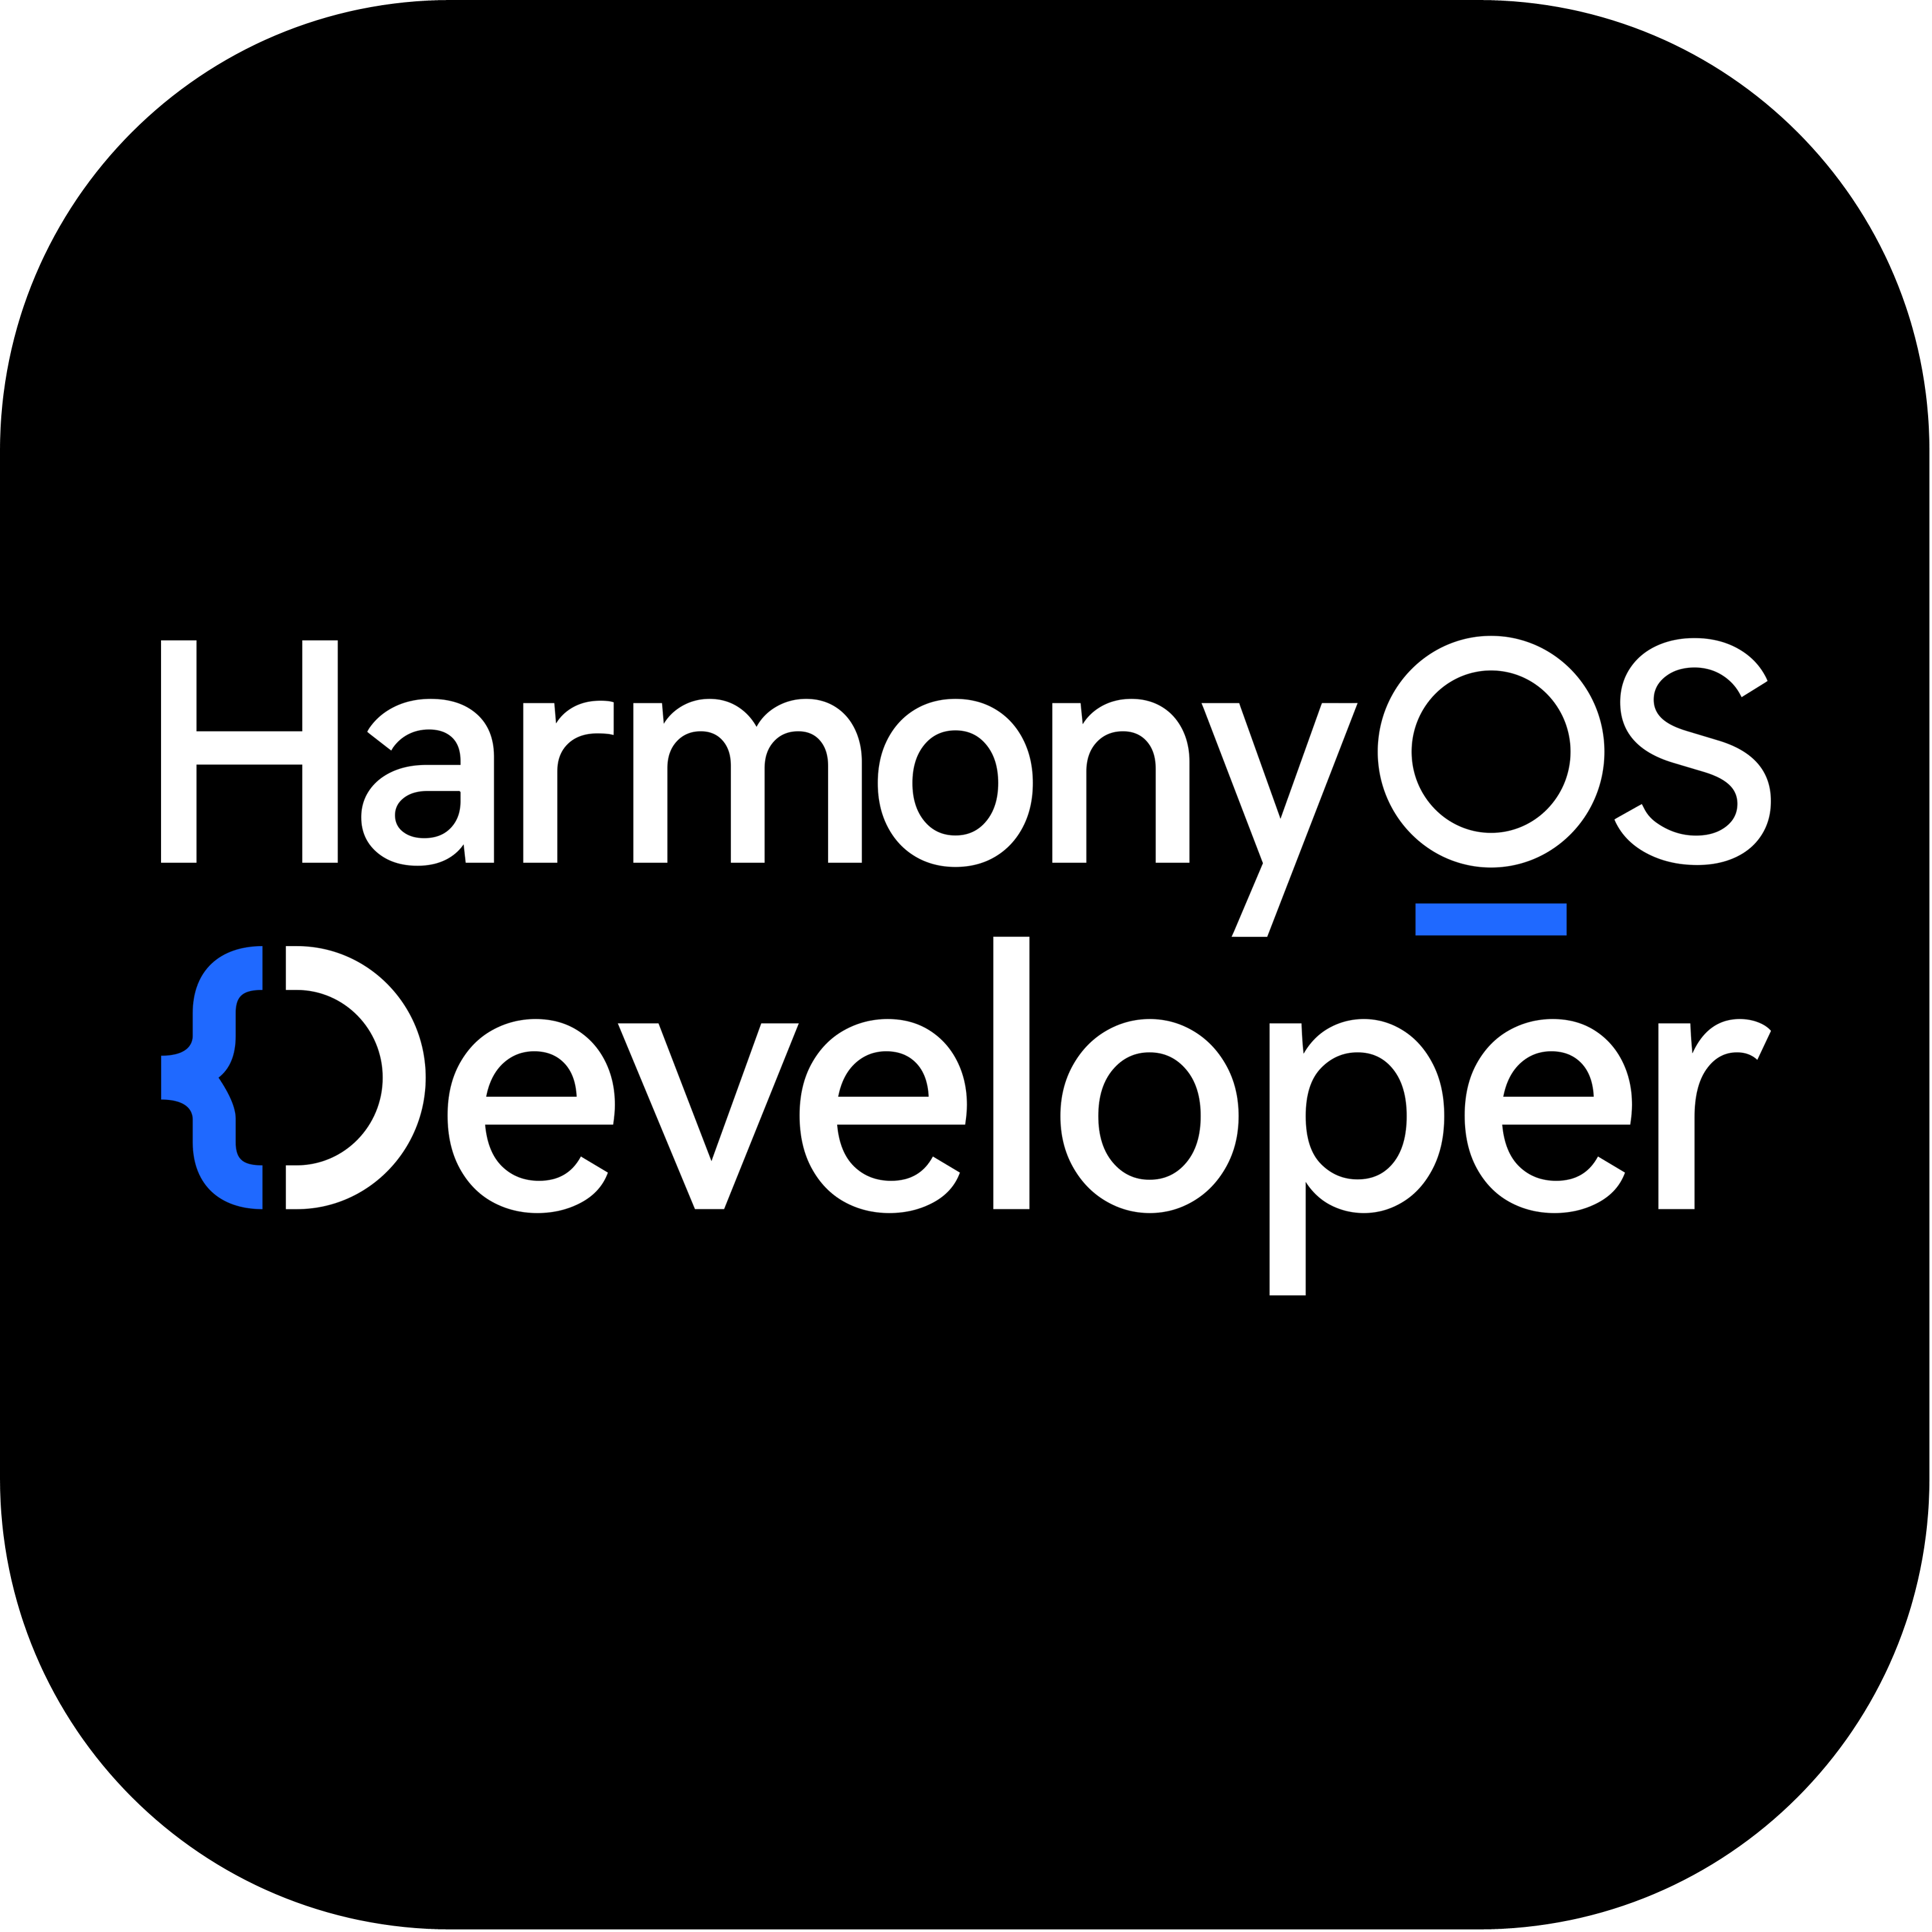 Harmony Os Developer Logo  Transparent Gallery